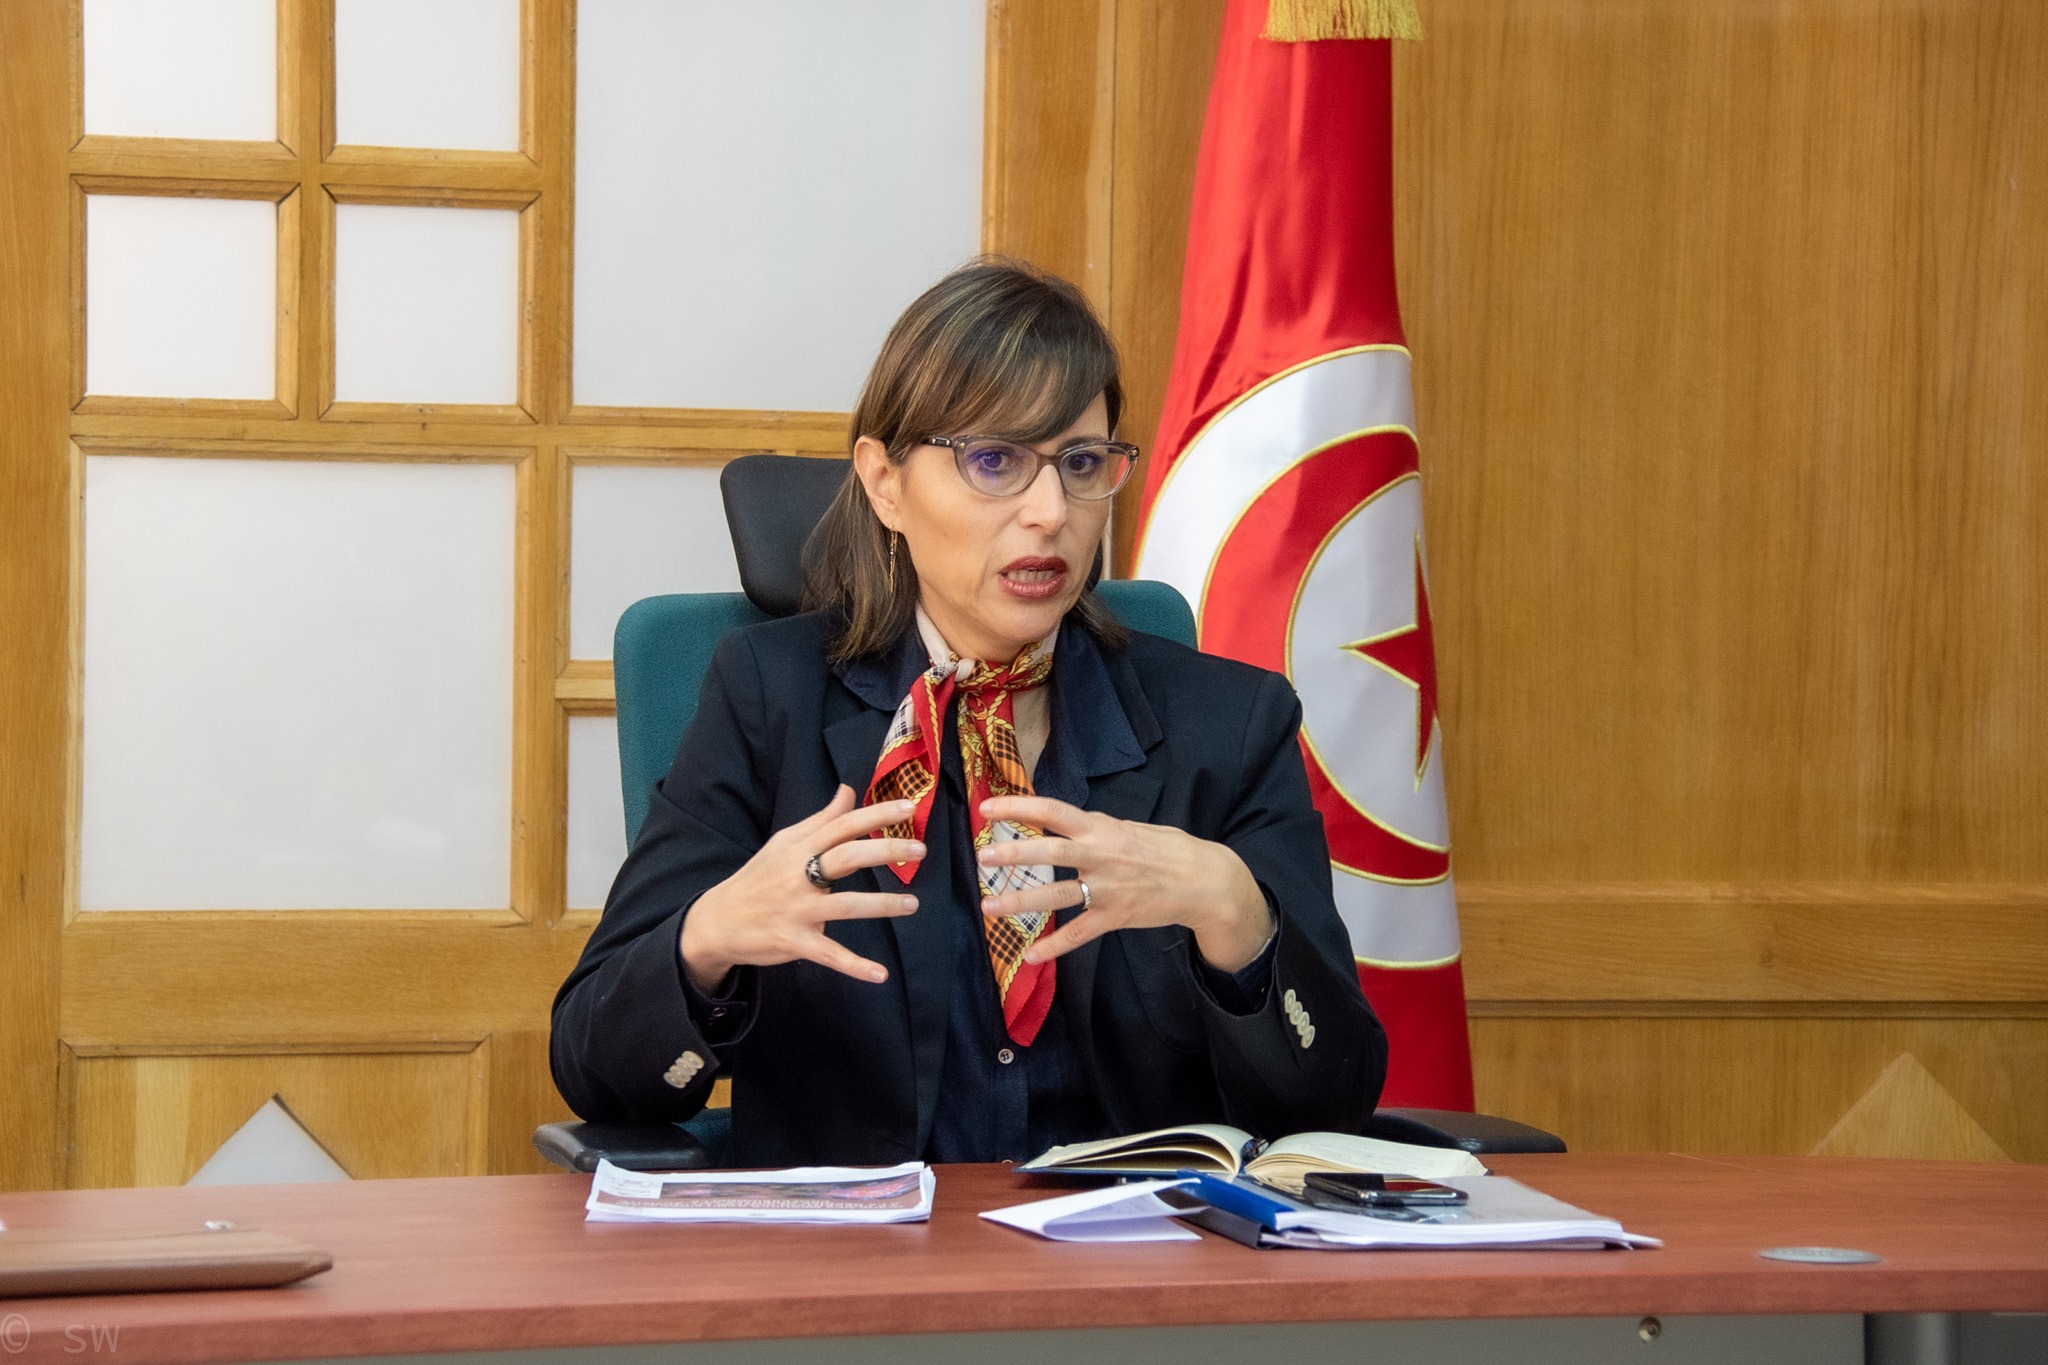 لبنى الجريبي: وضعية تونس اليوم كارثية